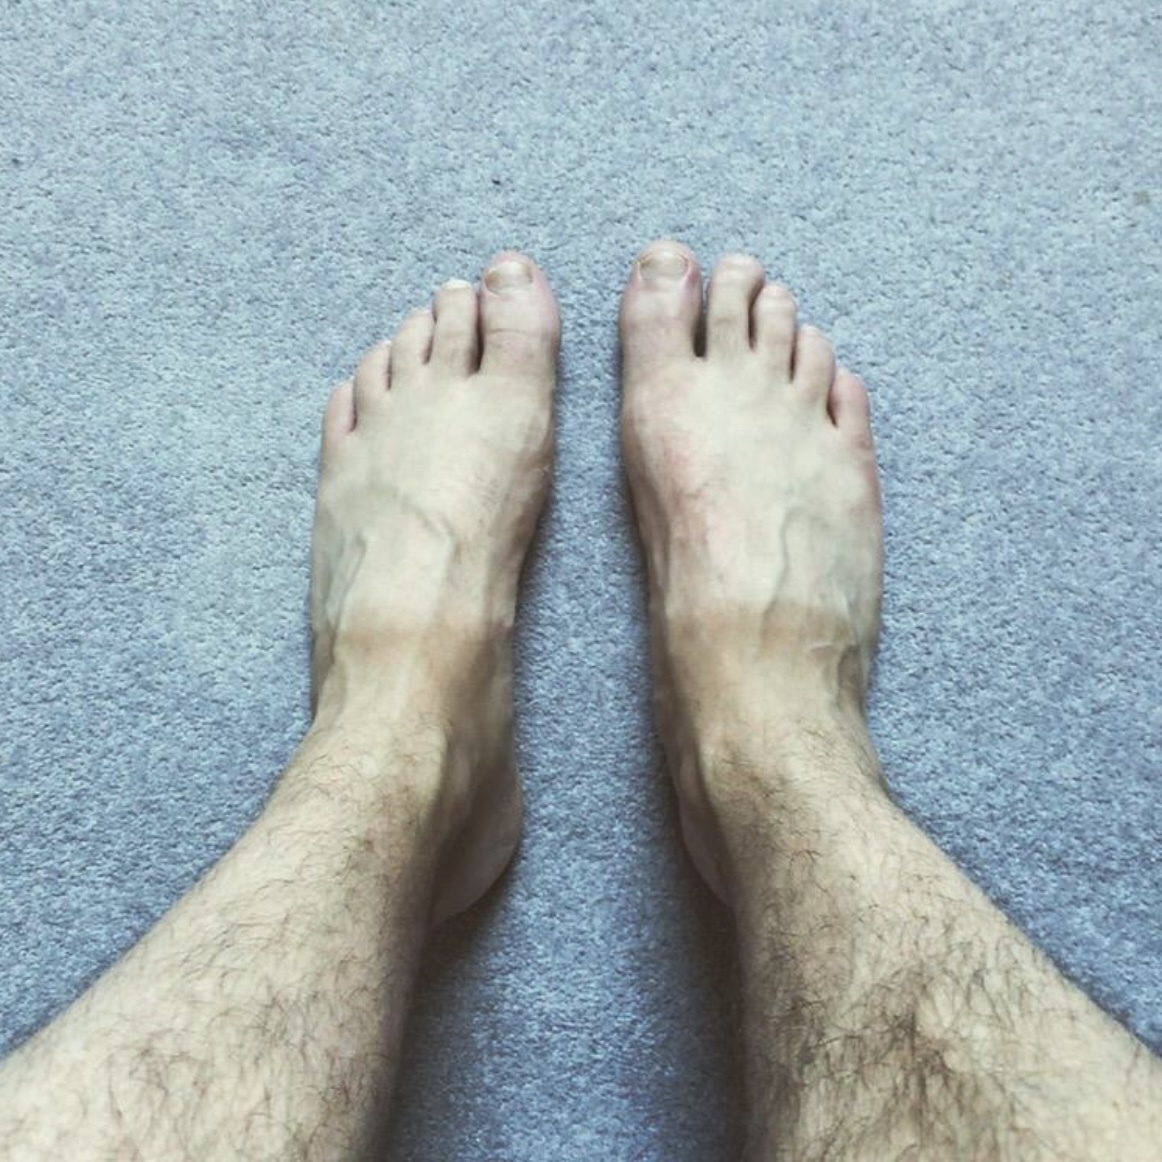 Ben Hanlin Feet